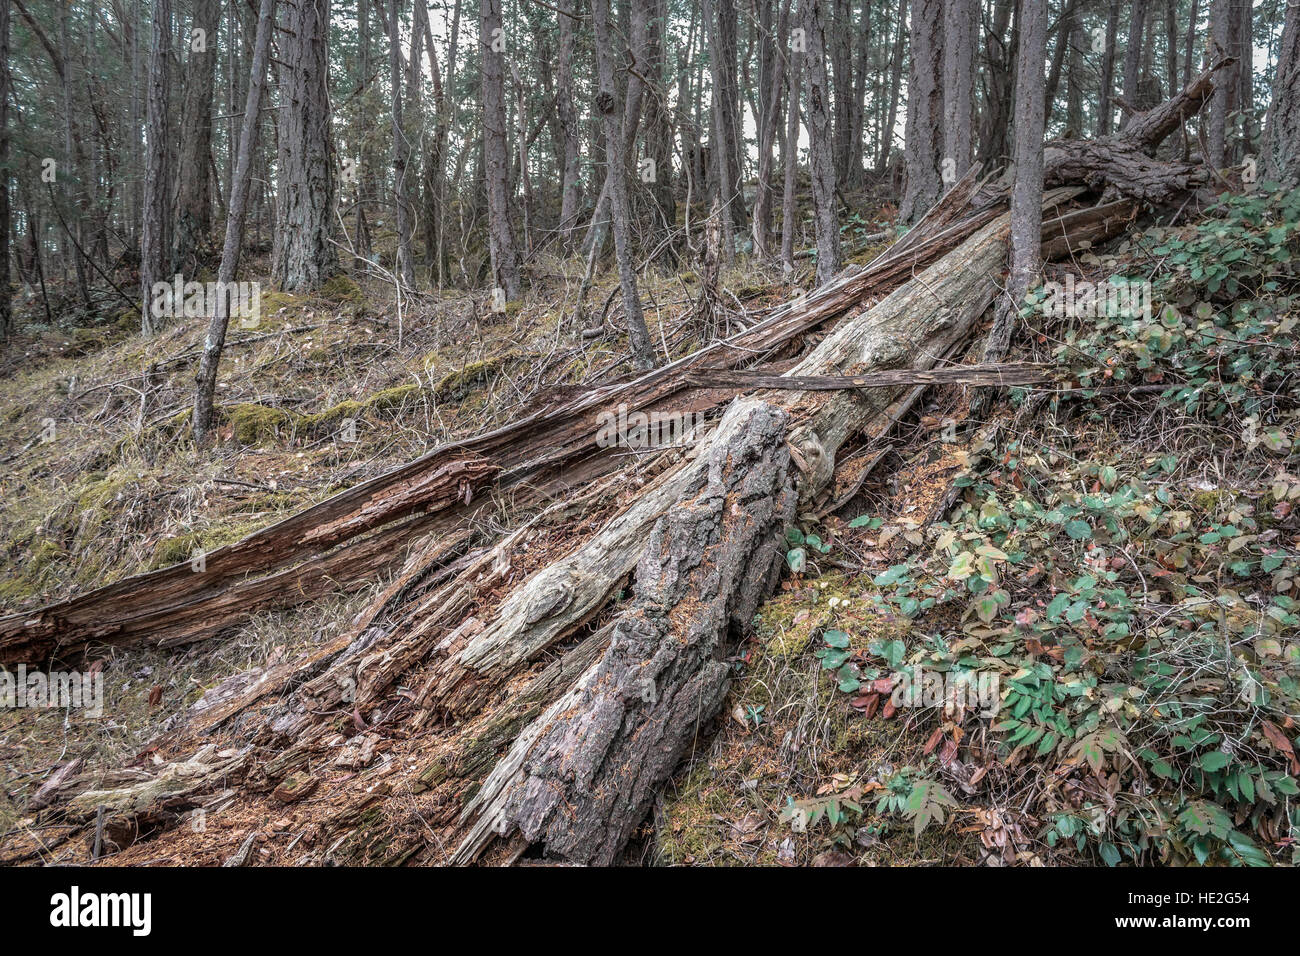 Einen umgestürzten Baumstamm, Split öffnen und verfallen, liegt auf einem moosigen Hügel in einem Douglas fir Wald in British Columbia. Stockfoto